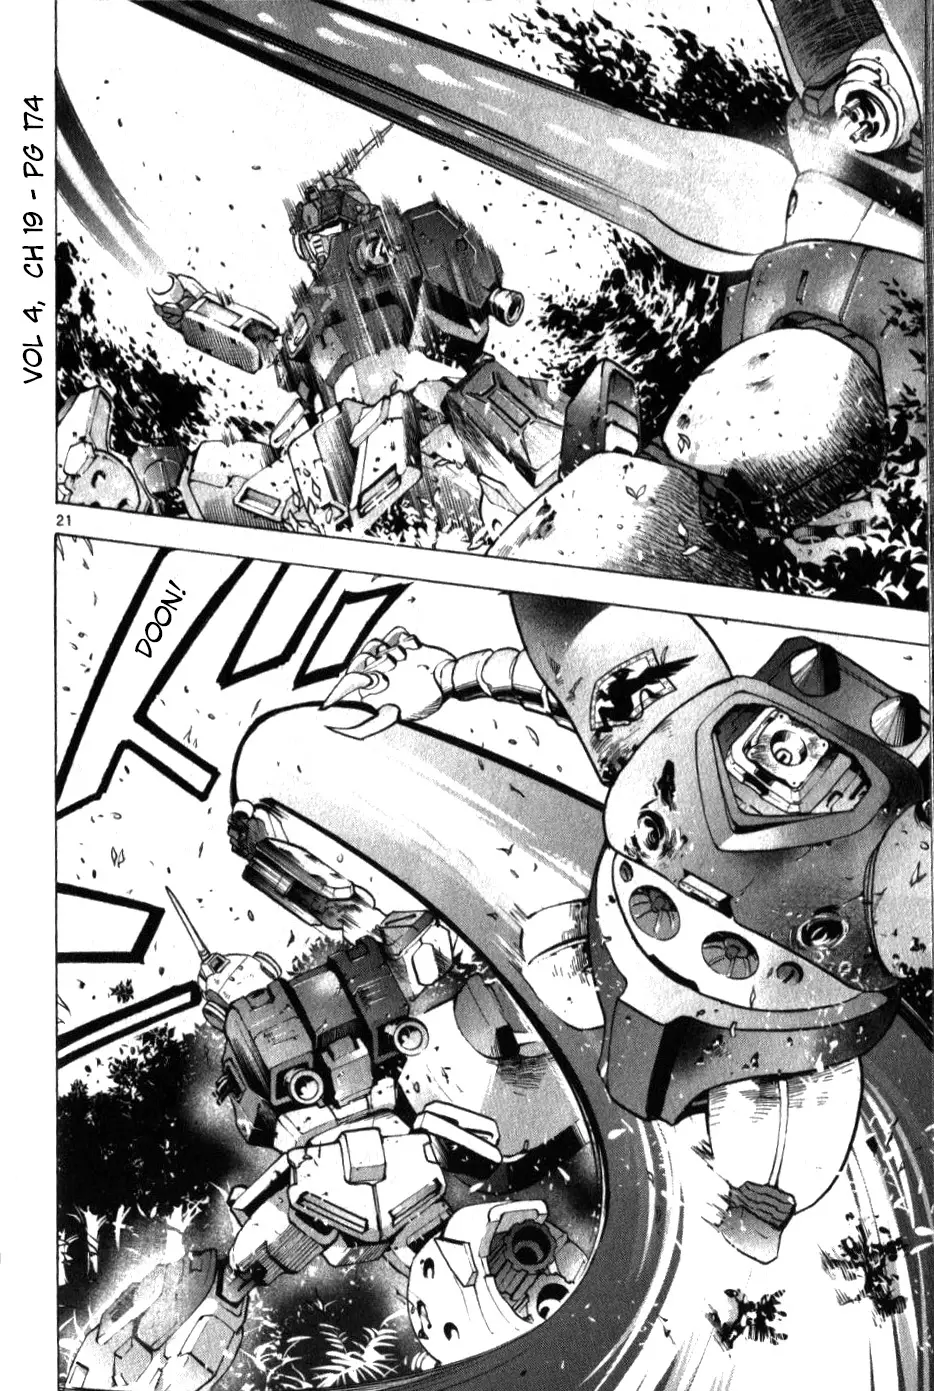 Mobile Suit Gundam Aggressor - 19 page 21-5f88e810